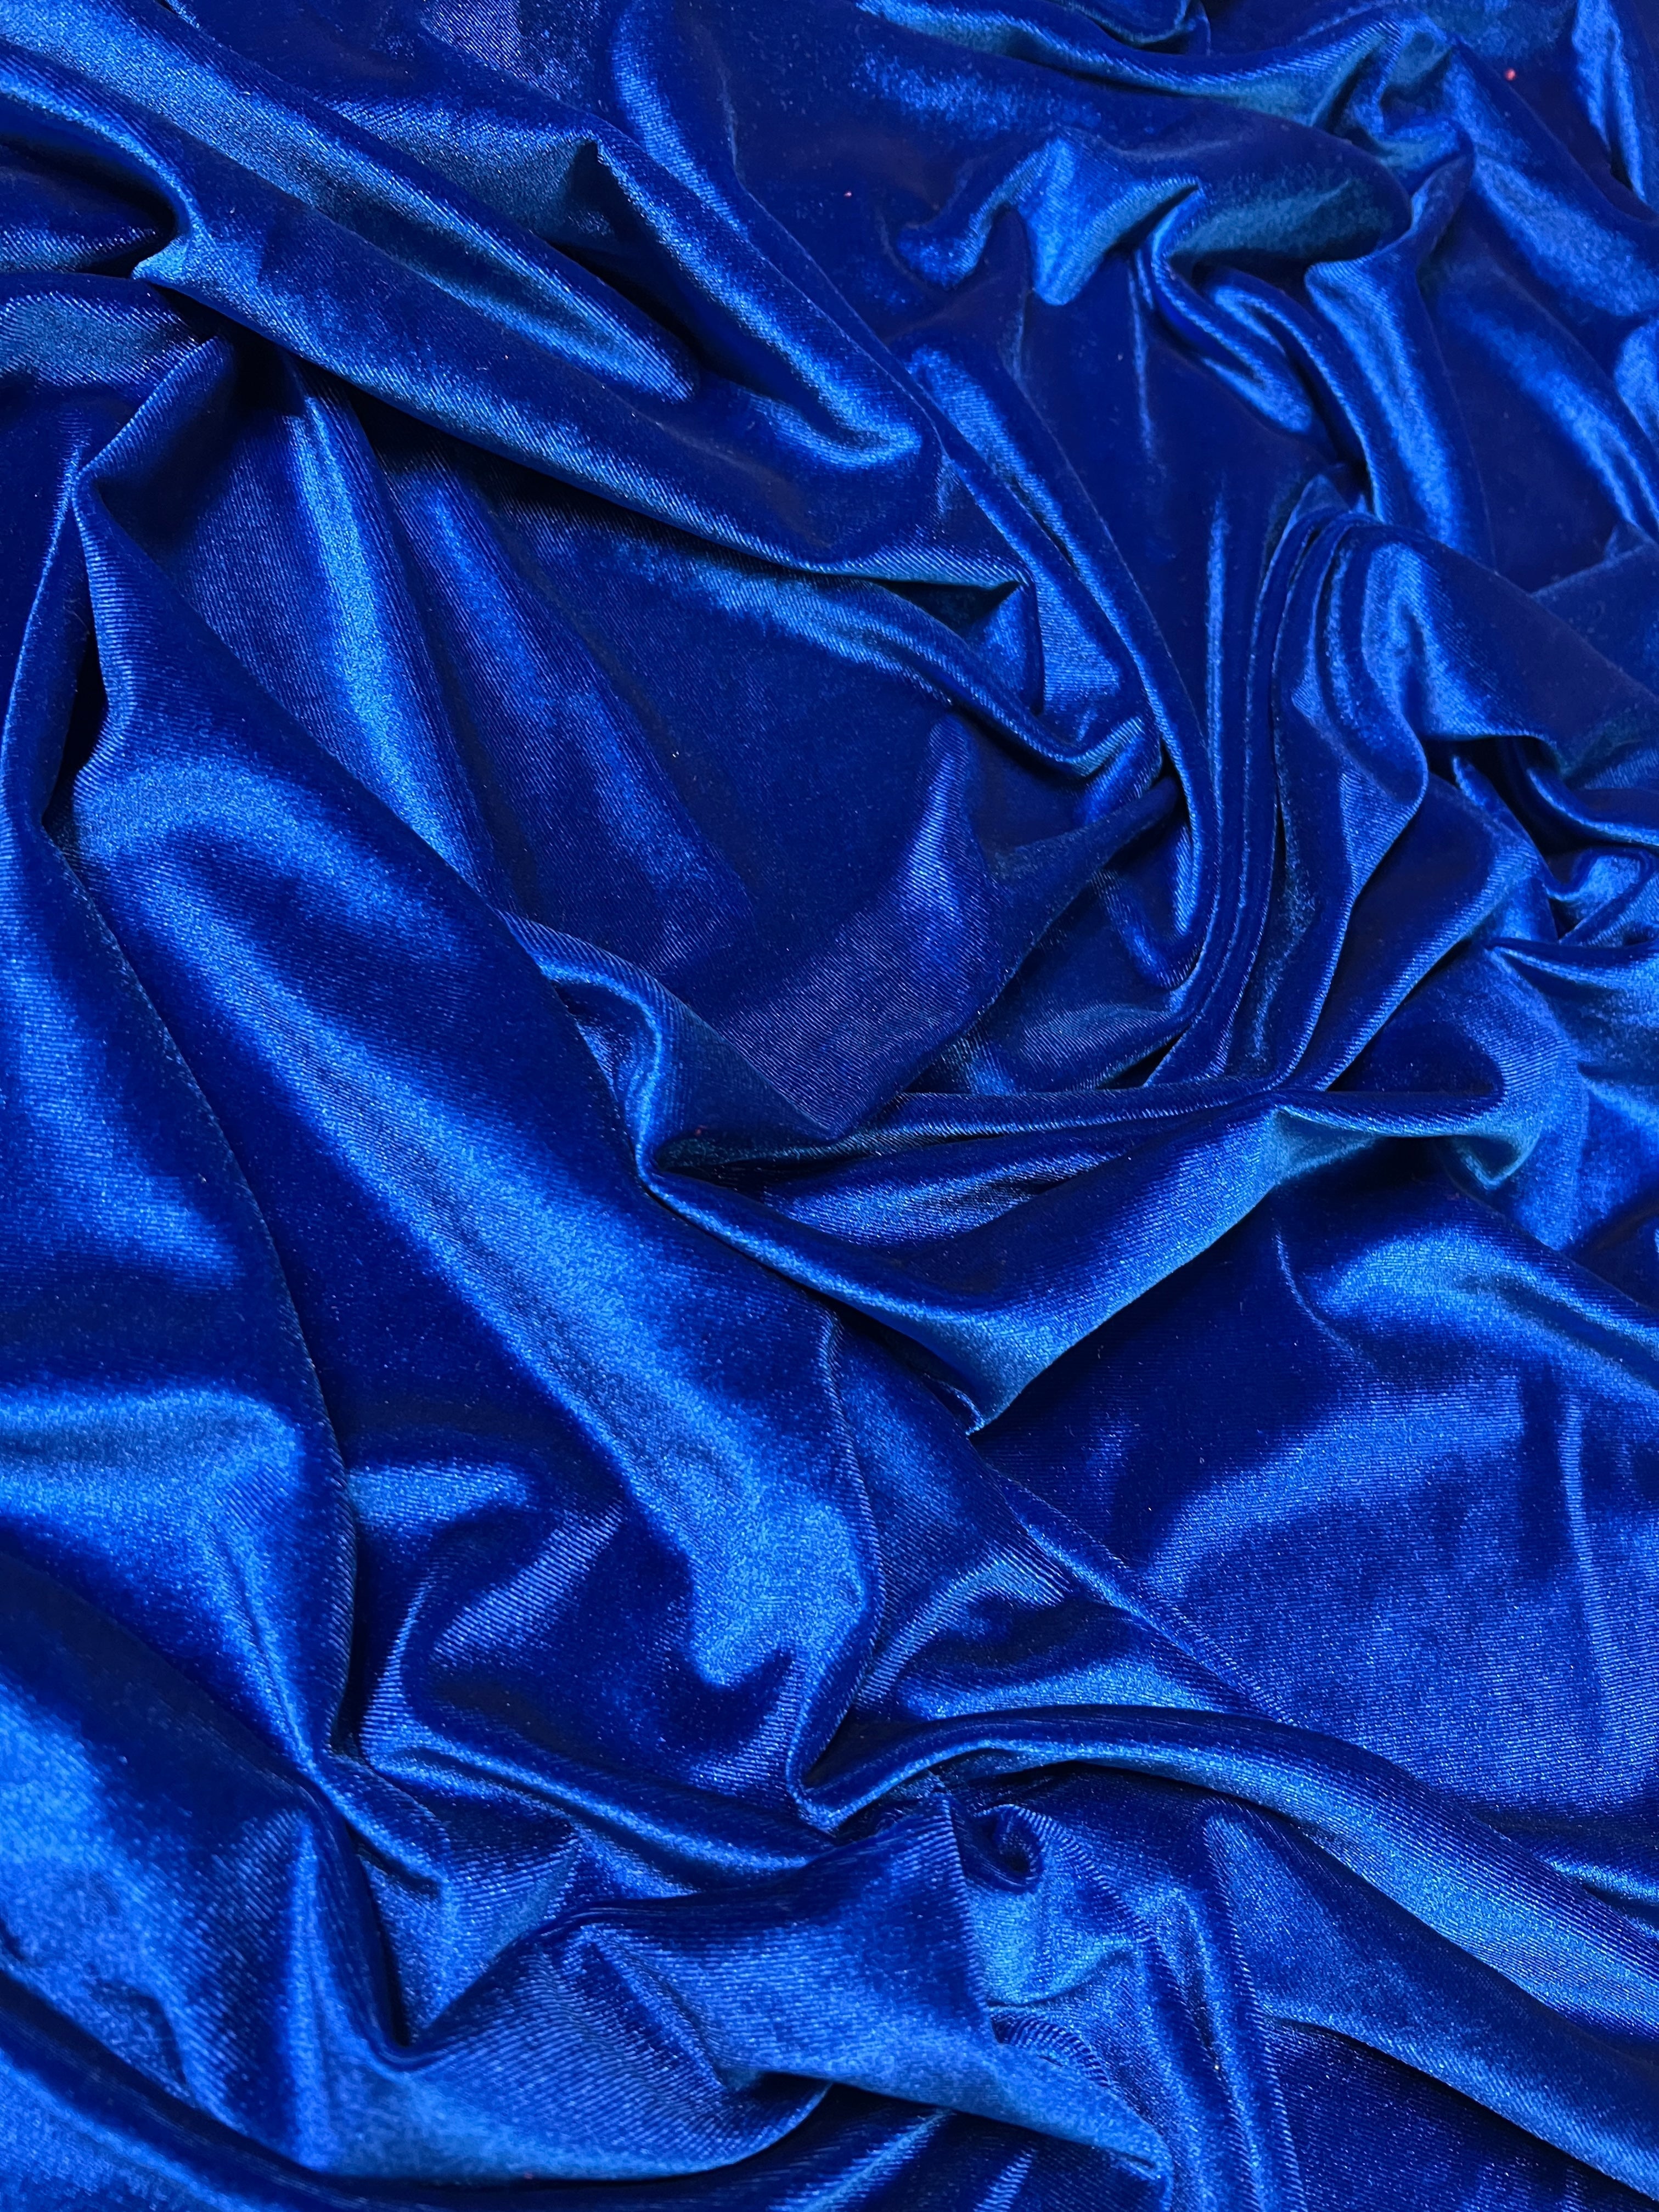 royal blue velvet, blue velvet, light blue velvet, dark blue velvet, emrald blue velvet, velvet for woman, velvet for bride, velvet for party wear dresses, velvet on discount, velvet on sale, buy velvet online